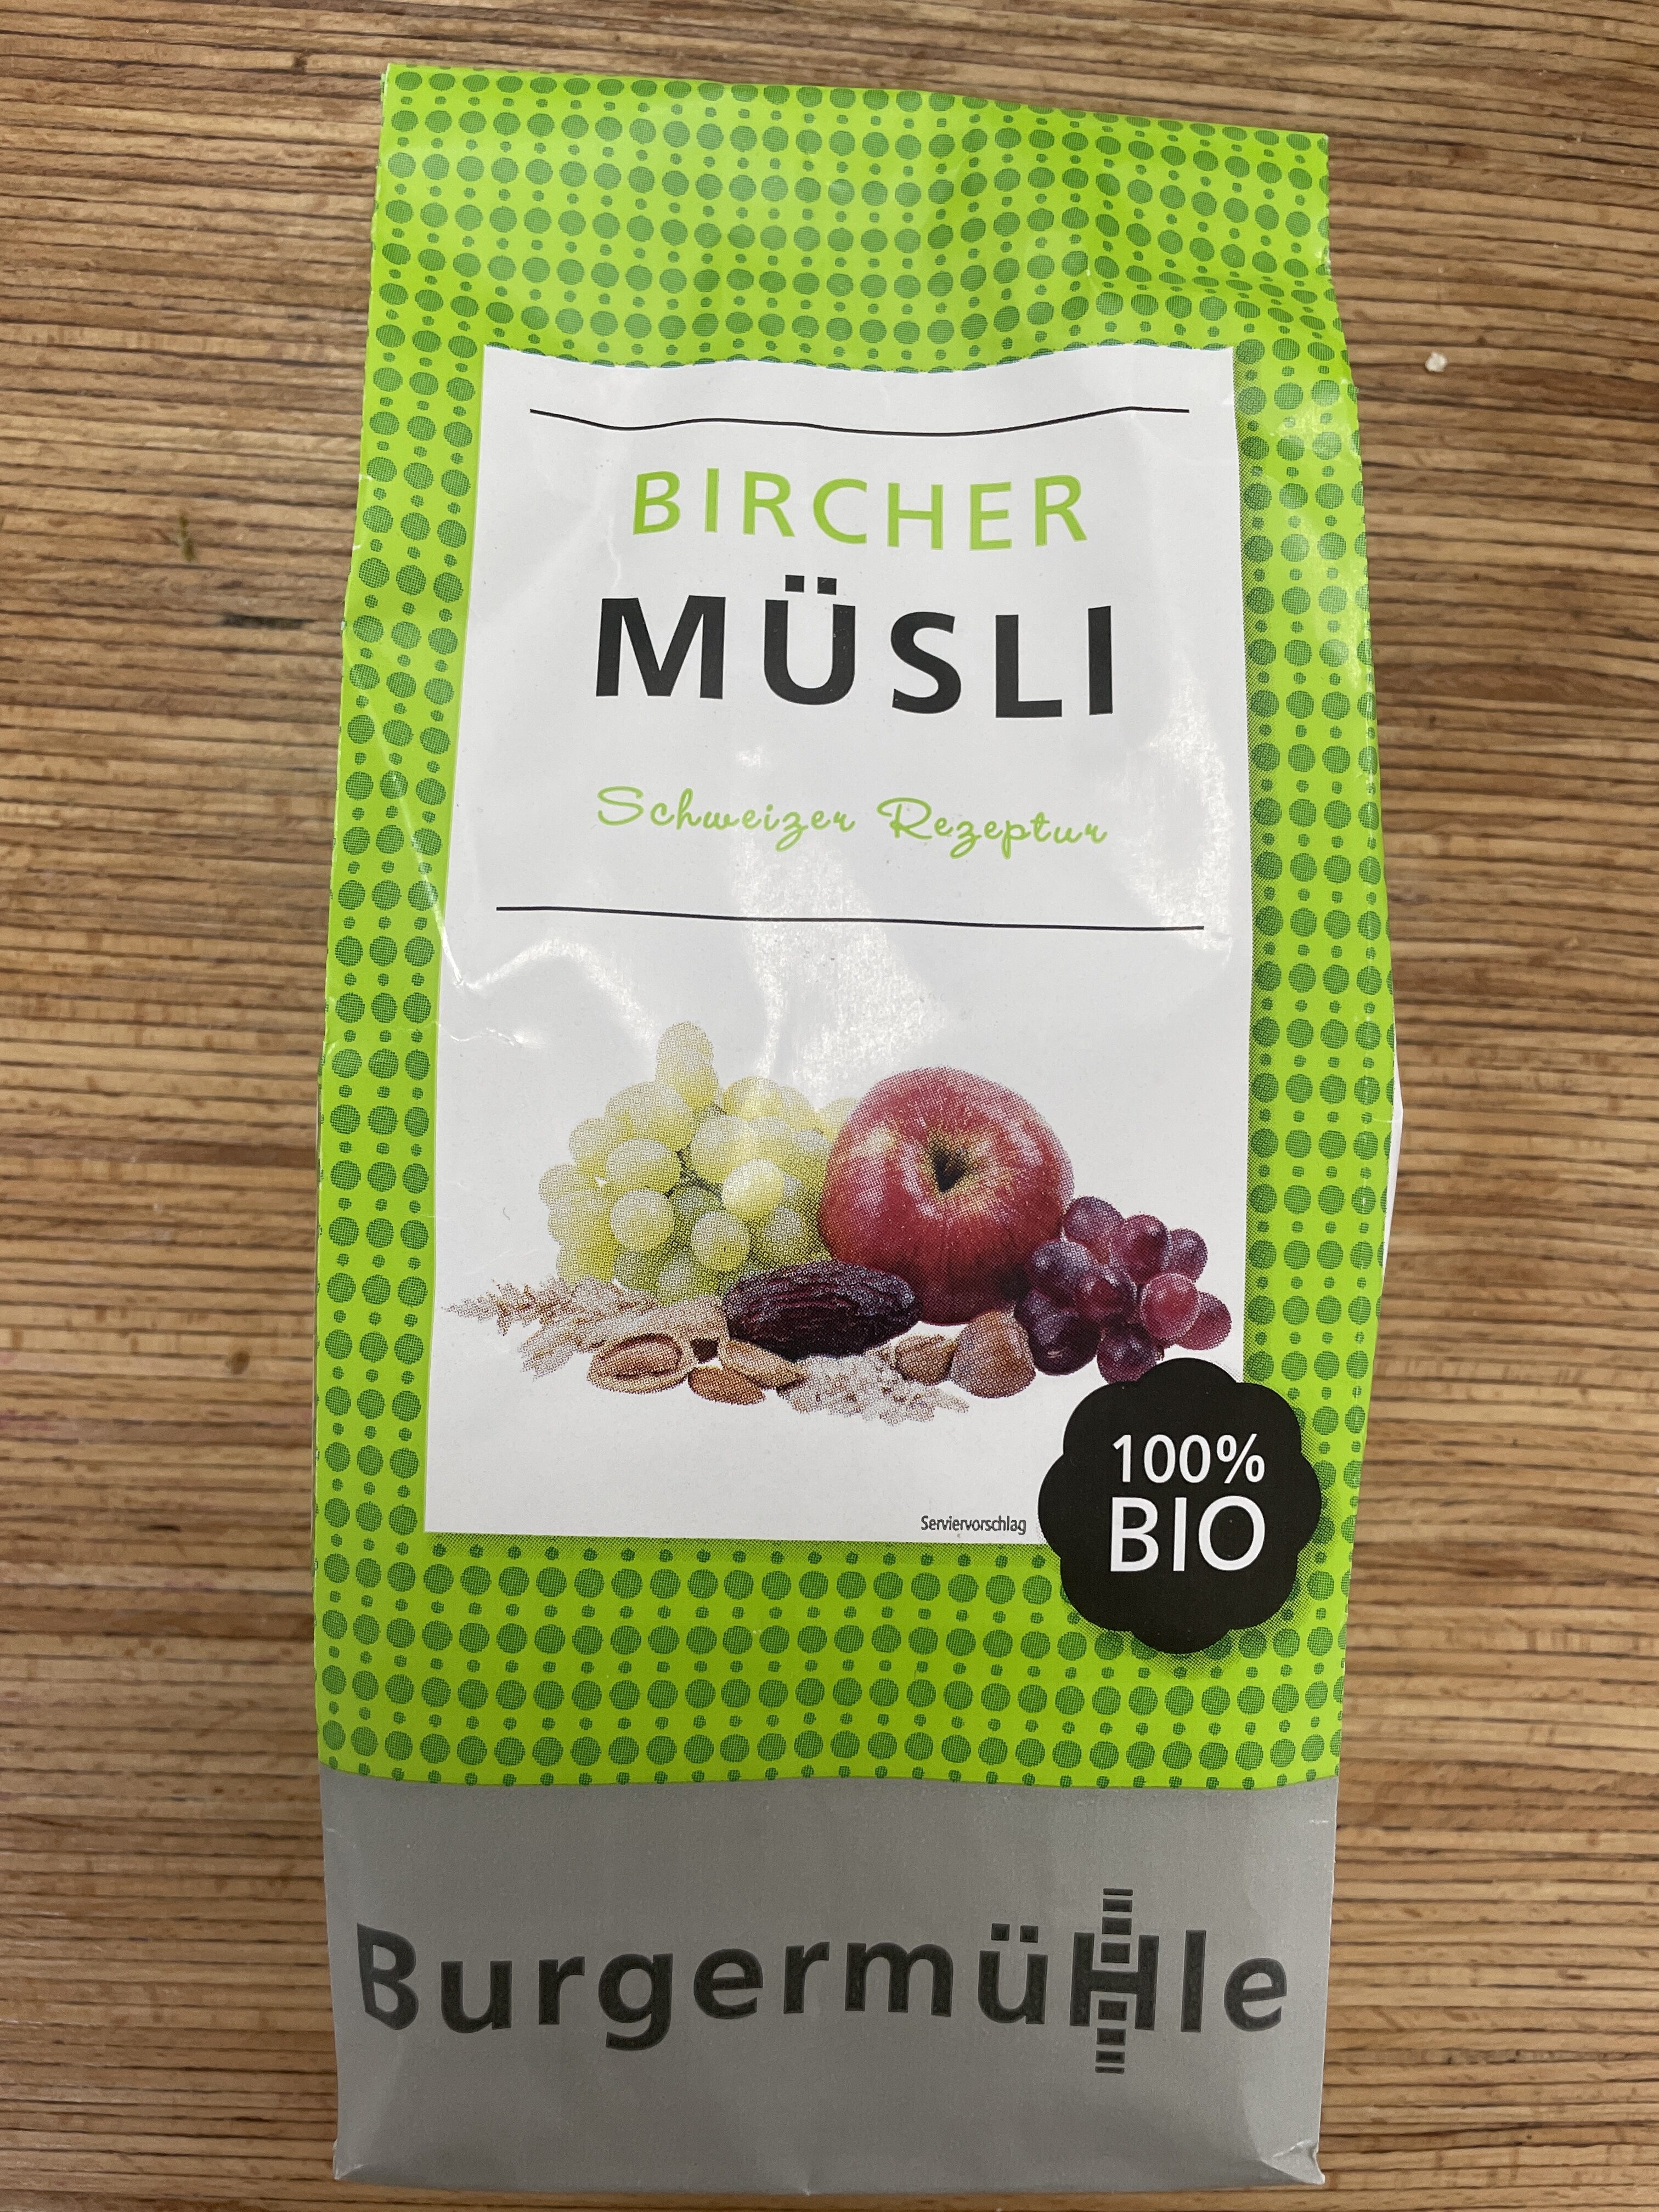 Bircher Müsli - Product